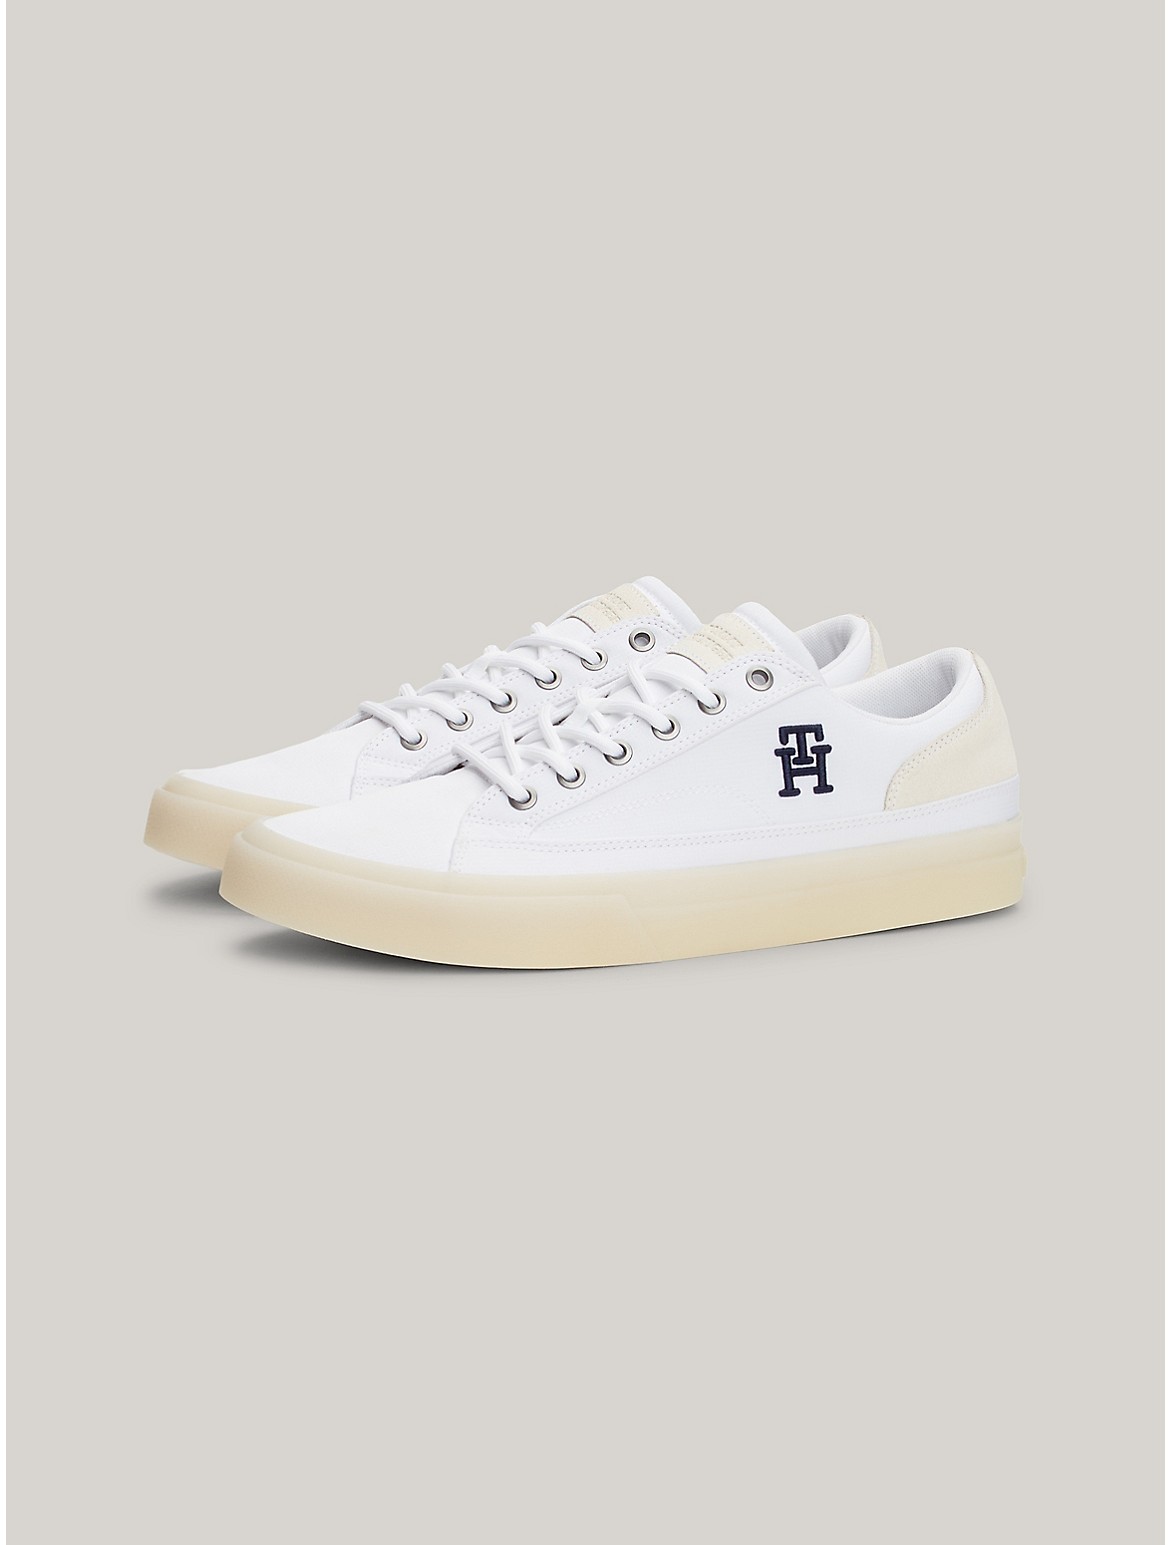 Tommy Hilfiger Men's TH Logo Contrast Sole Sneaker